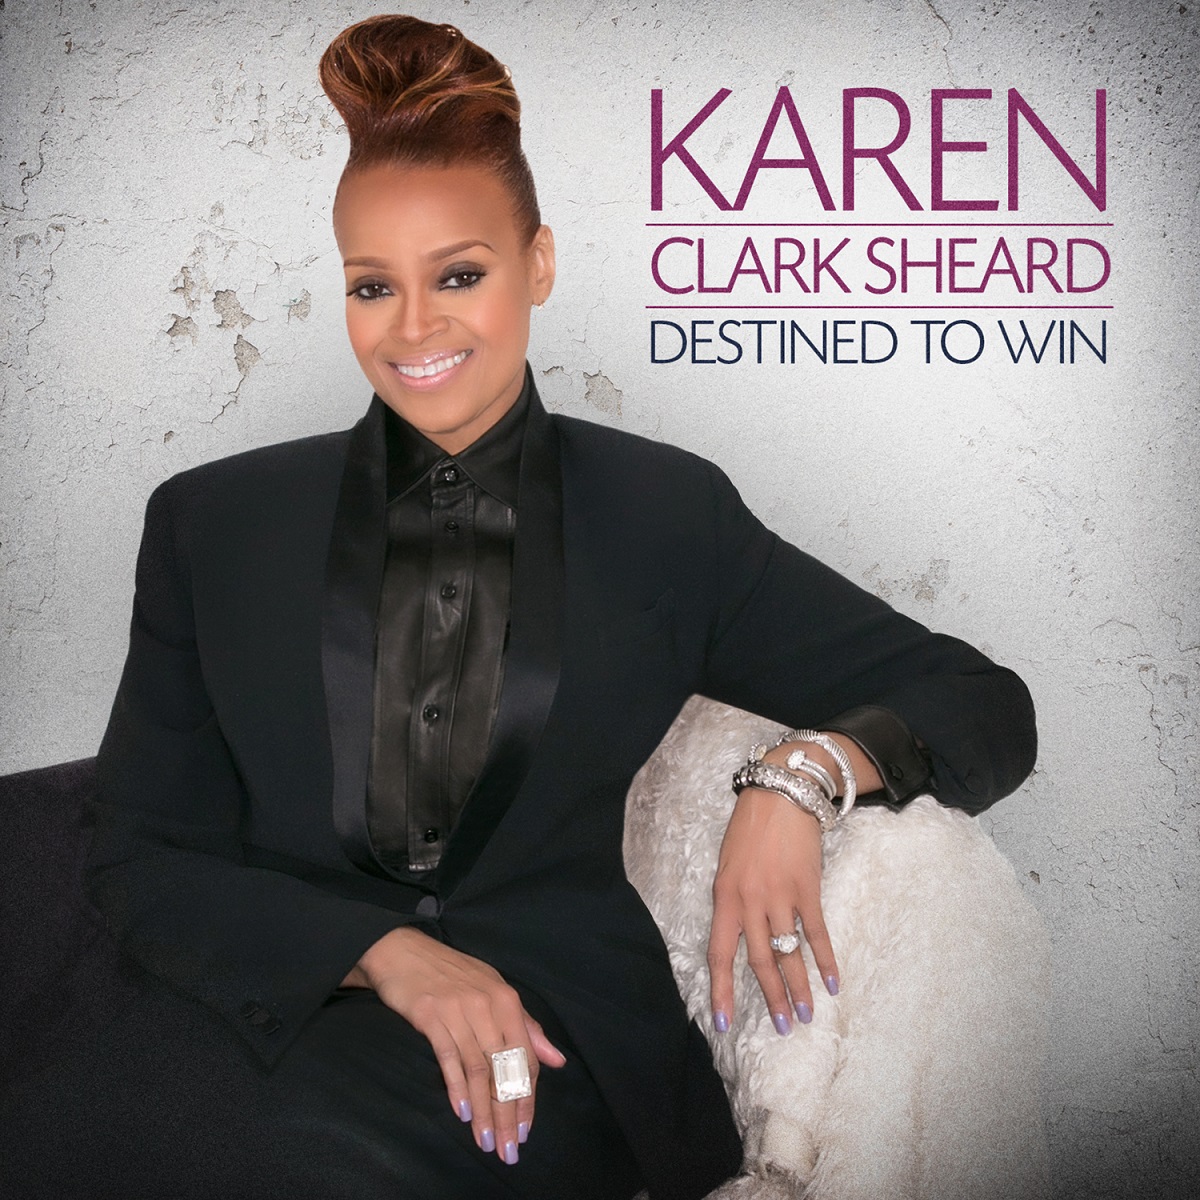 Karen Clark-Sheard – Destined to Win (July 17th release)